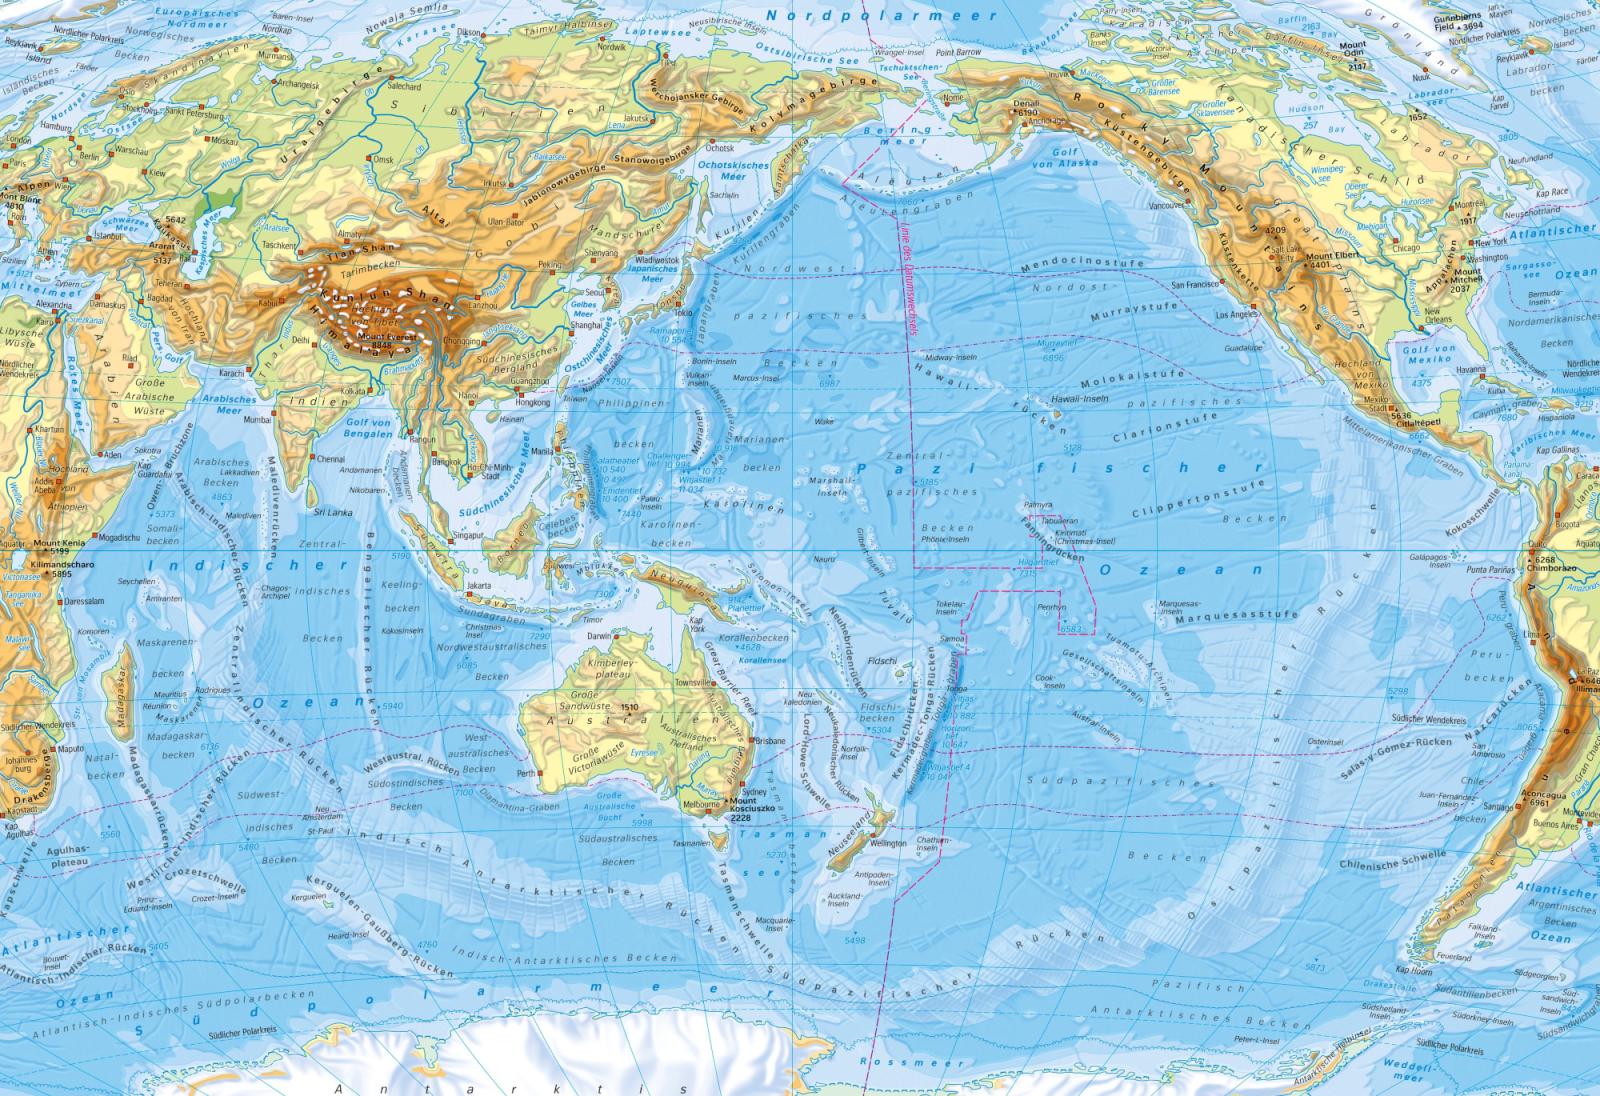 Атлас тихого океана. Тихий океан на карте. Острова Тихого океана на карте. Т̊и̊х̊и̊й̊ о̊к̊е̊а̊н̊ н̊а̊ к̊а̊р̊р̊ т̊т̊е̊. Карта Тихого океана географическая.